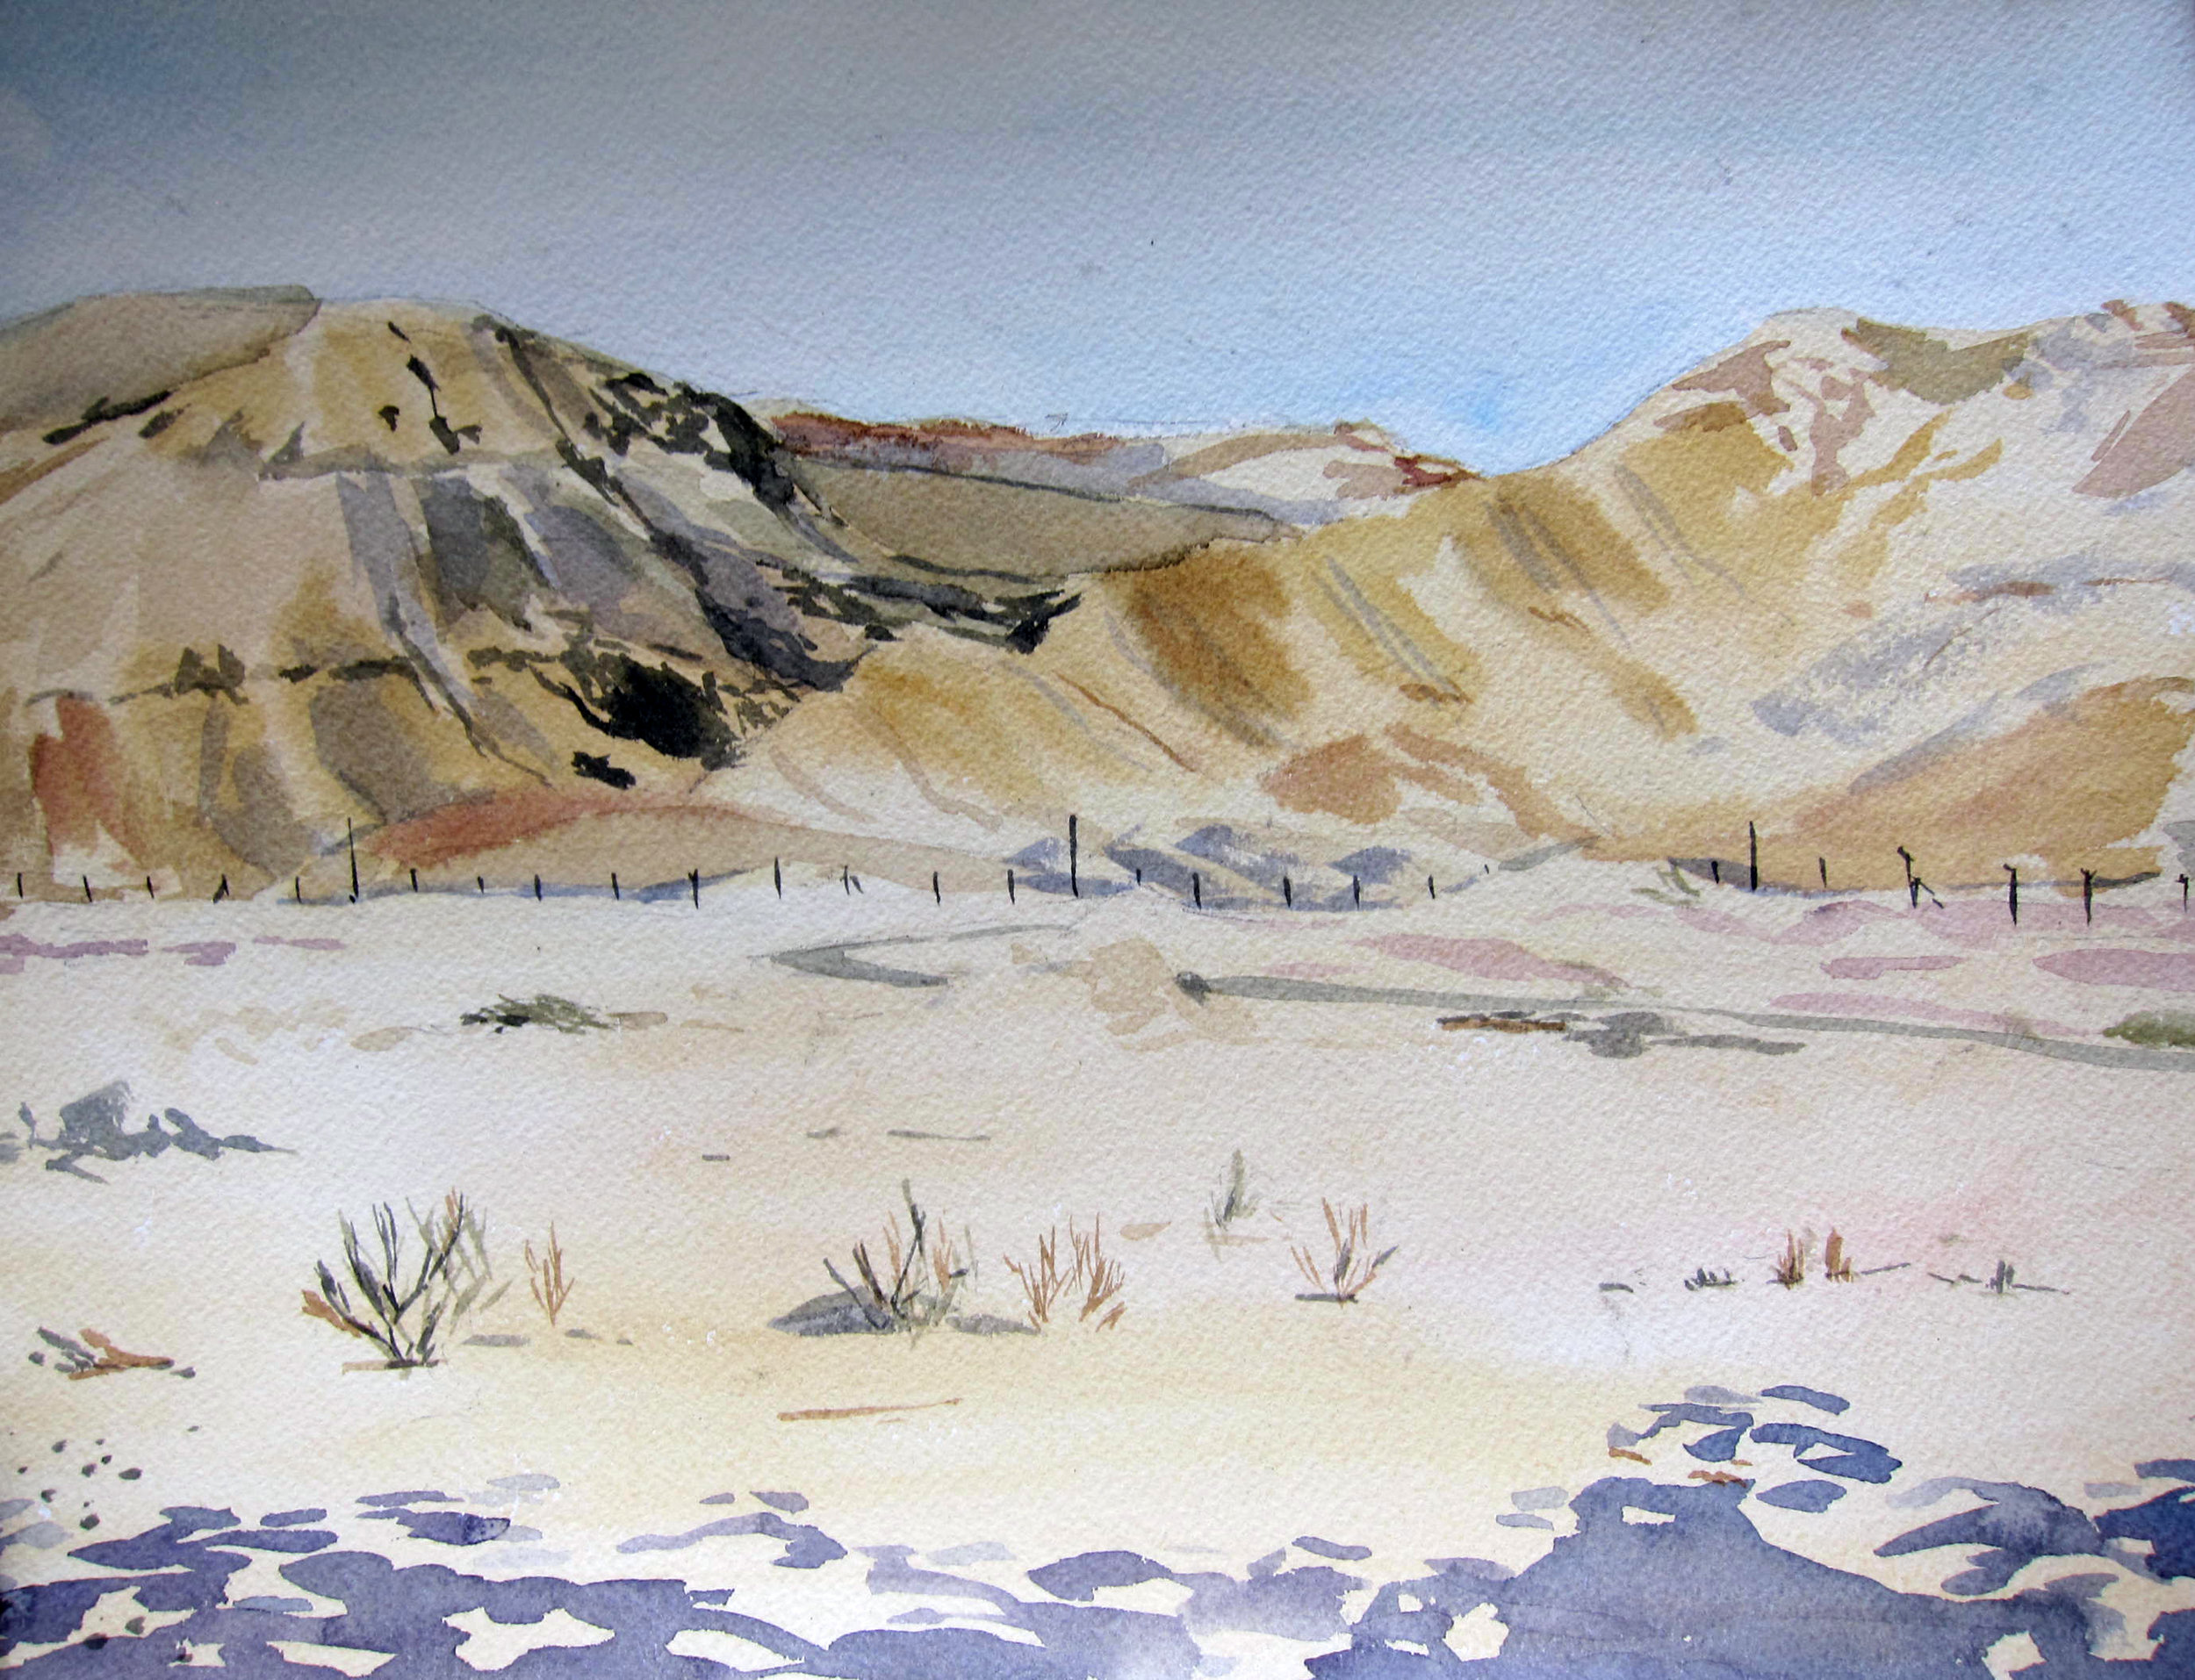 <i>Negev Desert</i>, 11x15", watercolor on paper, 2012